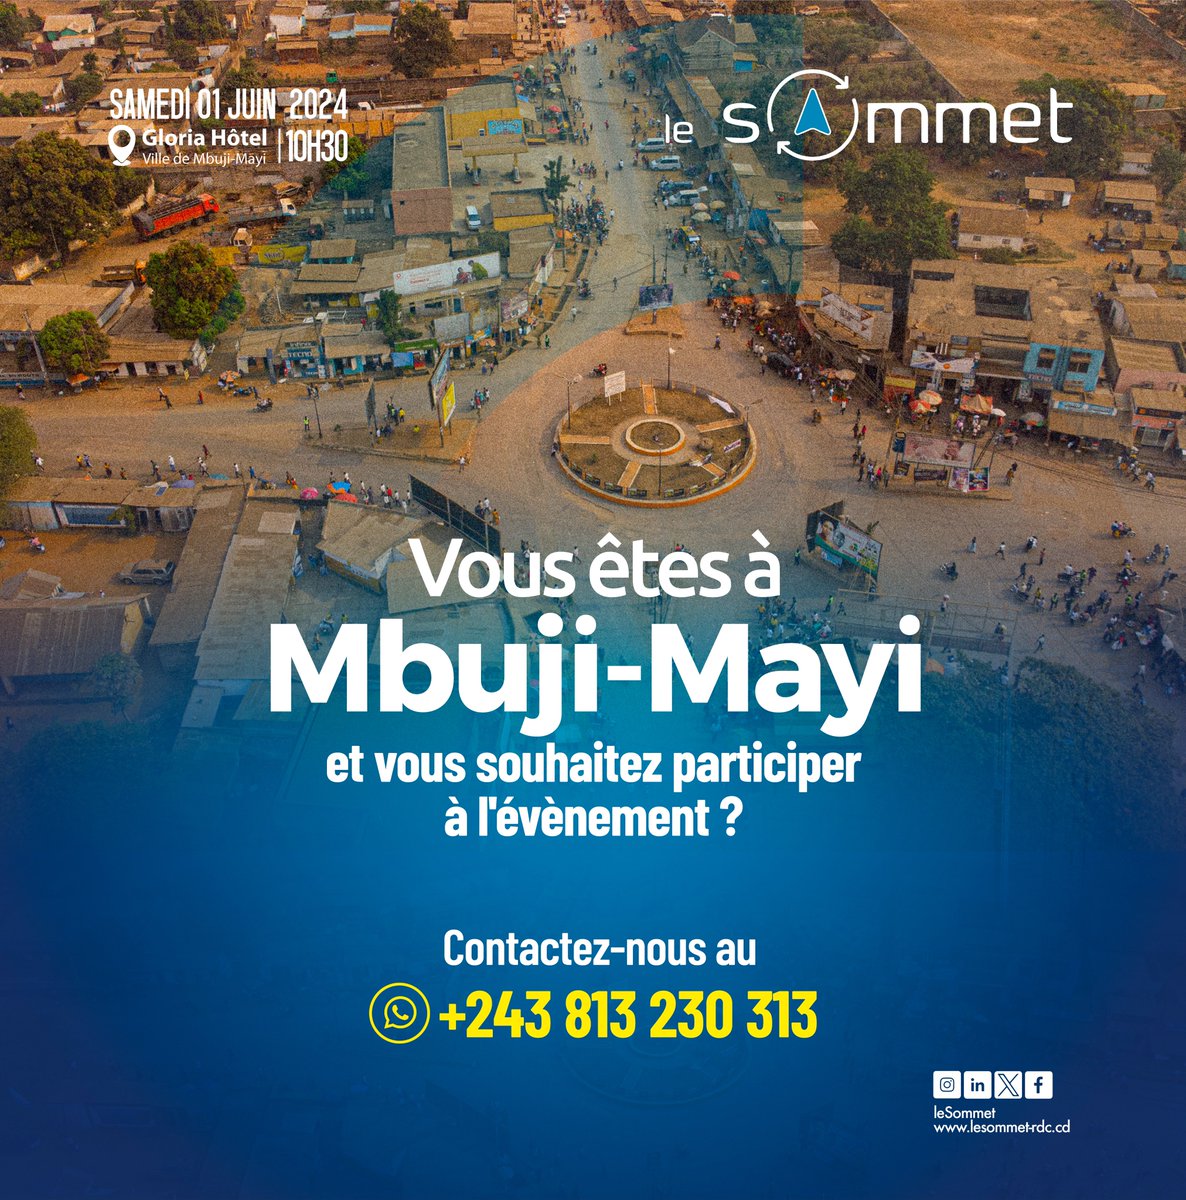 #RDC | @leSOmmet243 | 01 JUIN 2k24 #MBUJI_MAYI | #KASAI Vous souhaitez participer à l'évènement? Contactez ce numéro 👇 +243 813 230 313 | @leSOmmet243